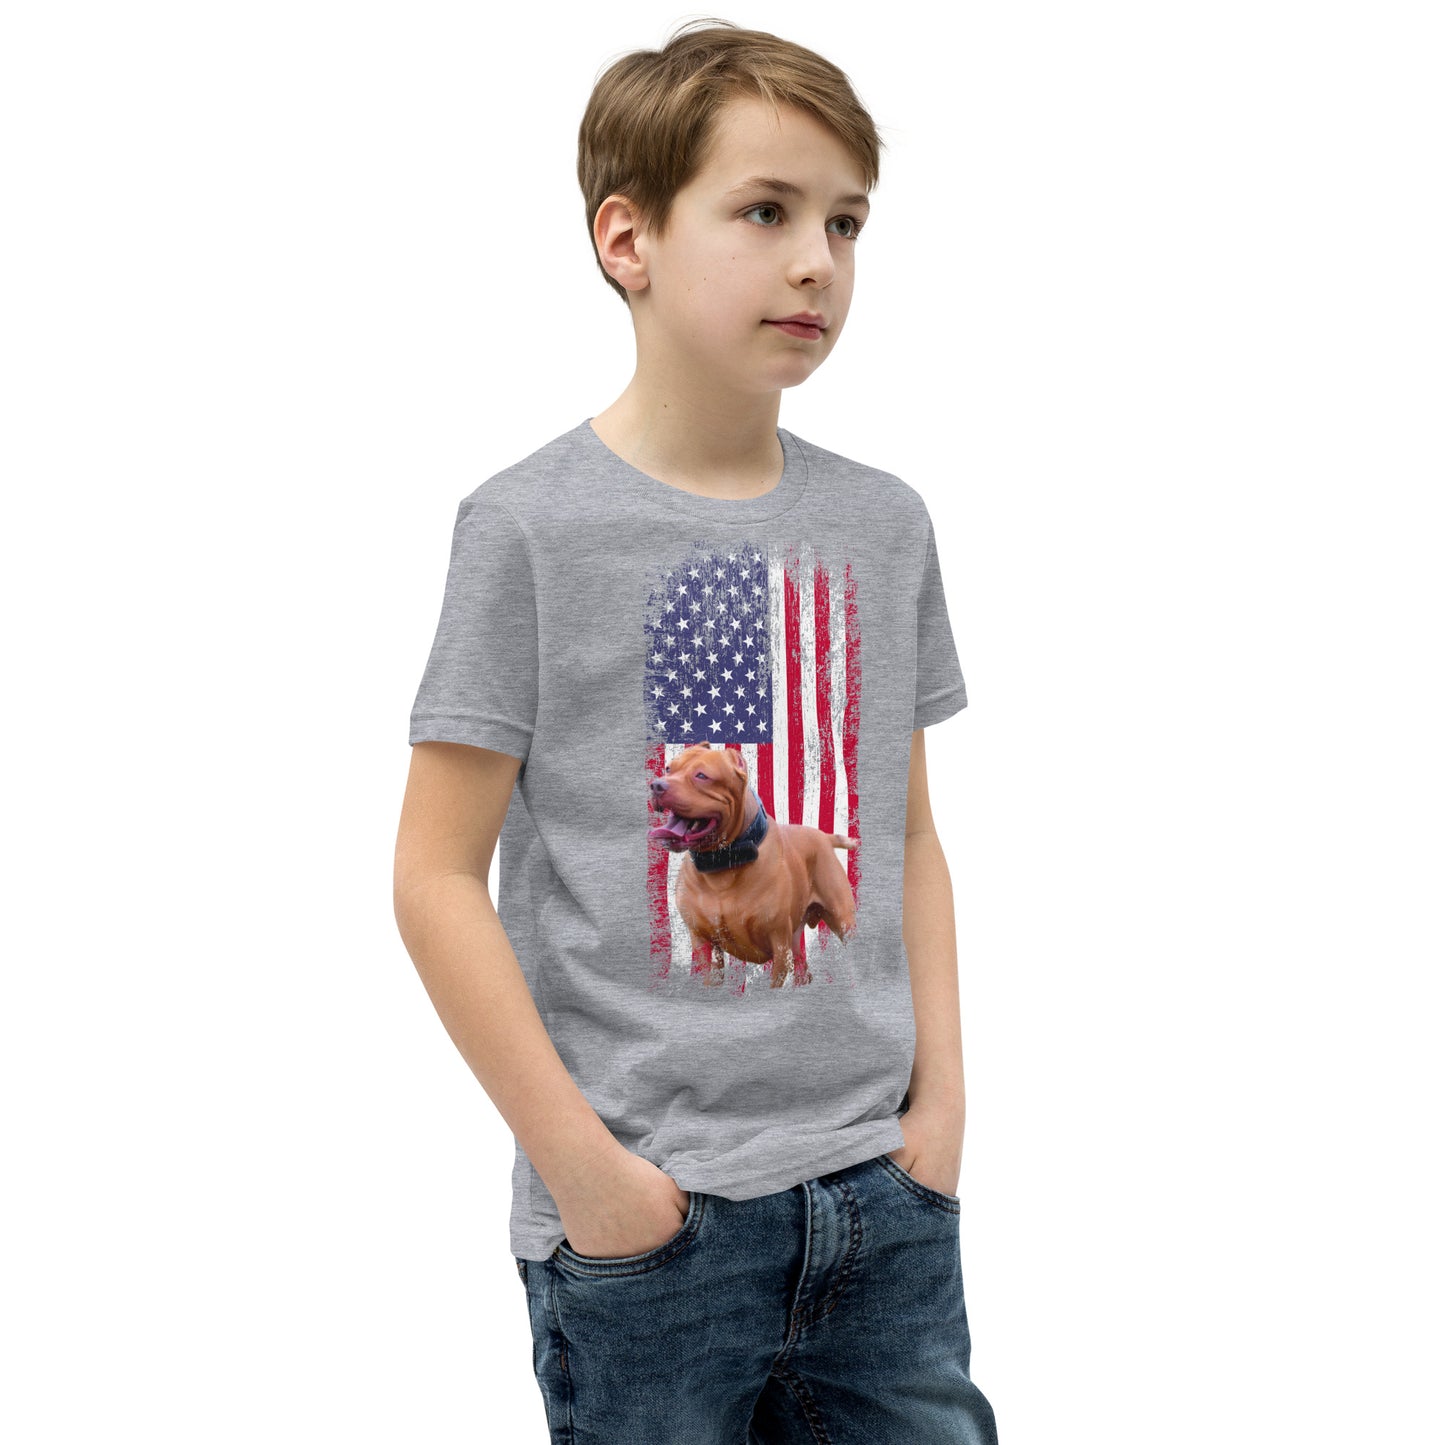 Zion USA Youth T-Shirt